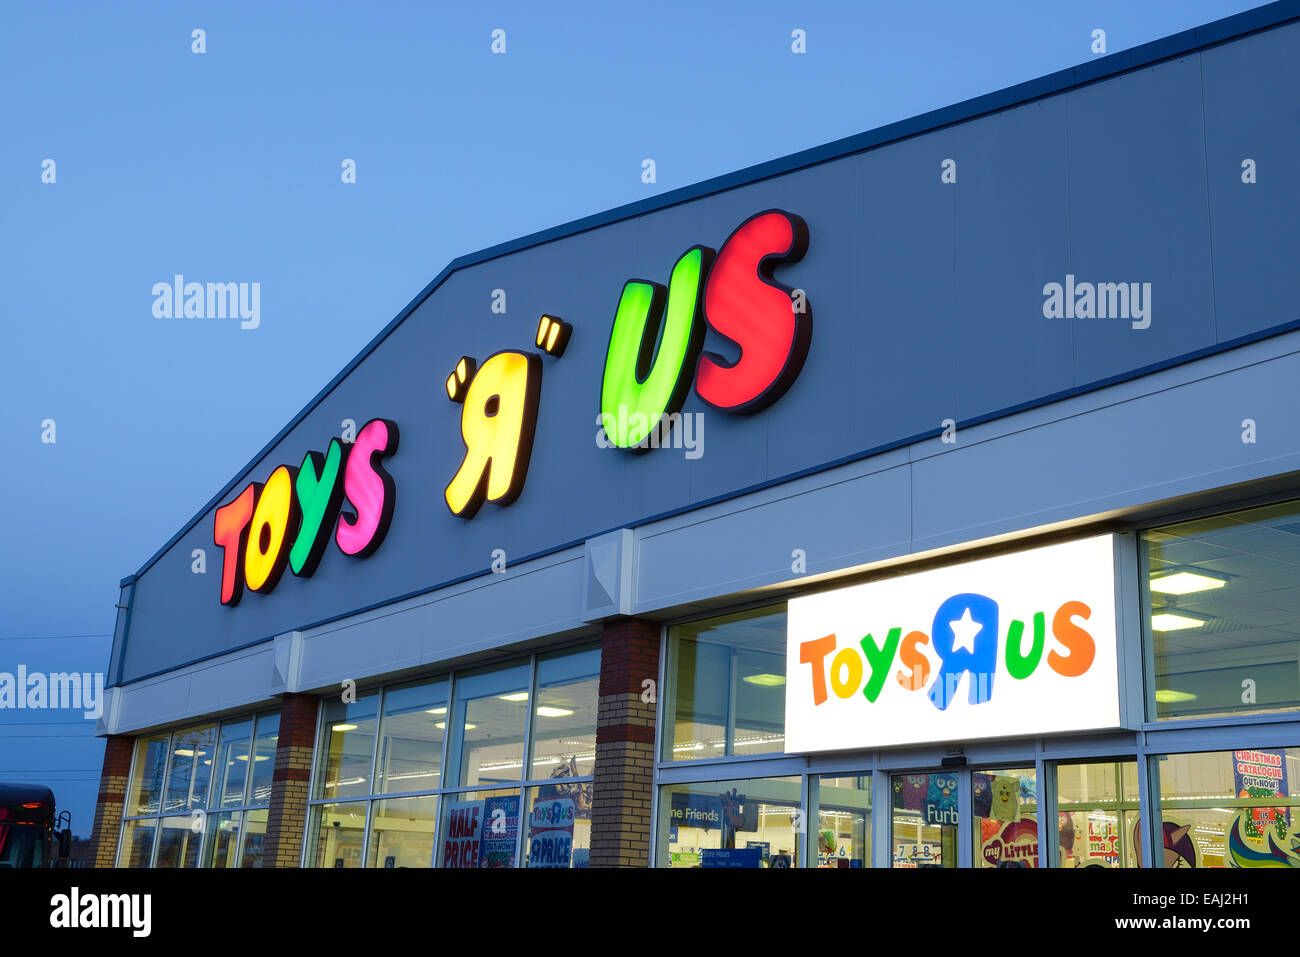 Toys R Us shop/la nuit Banque D'Images